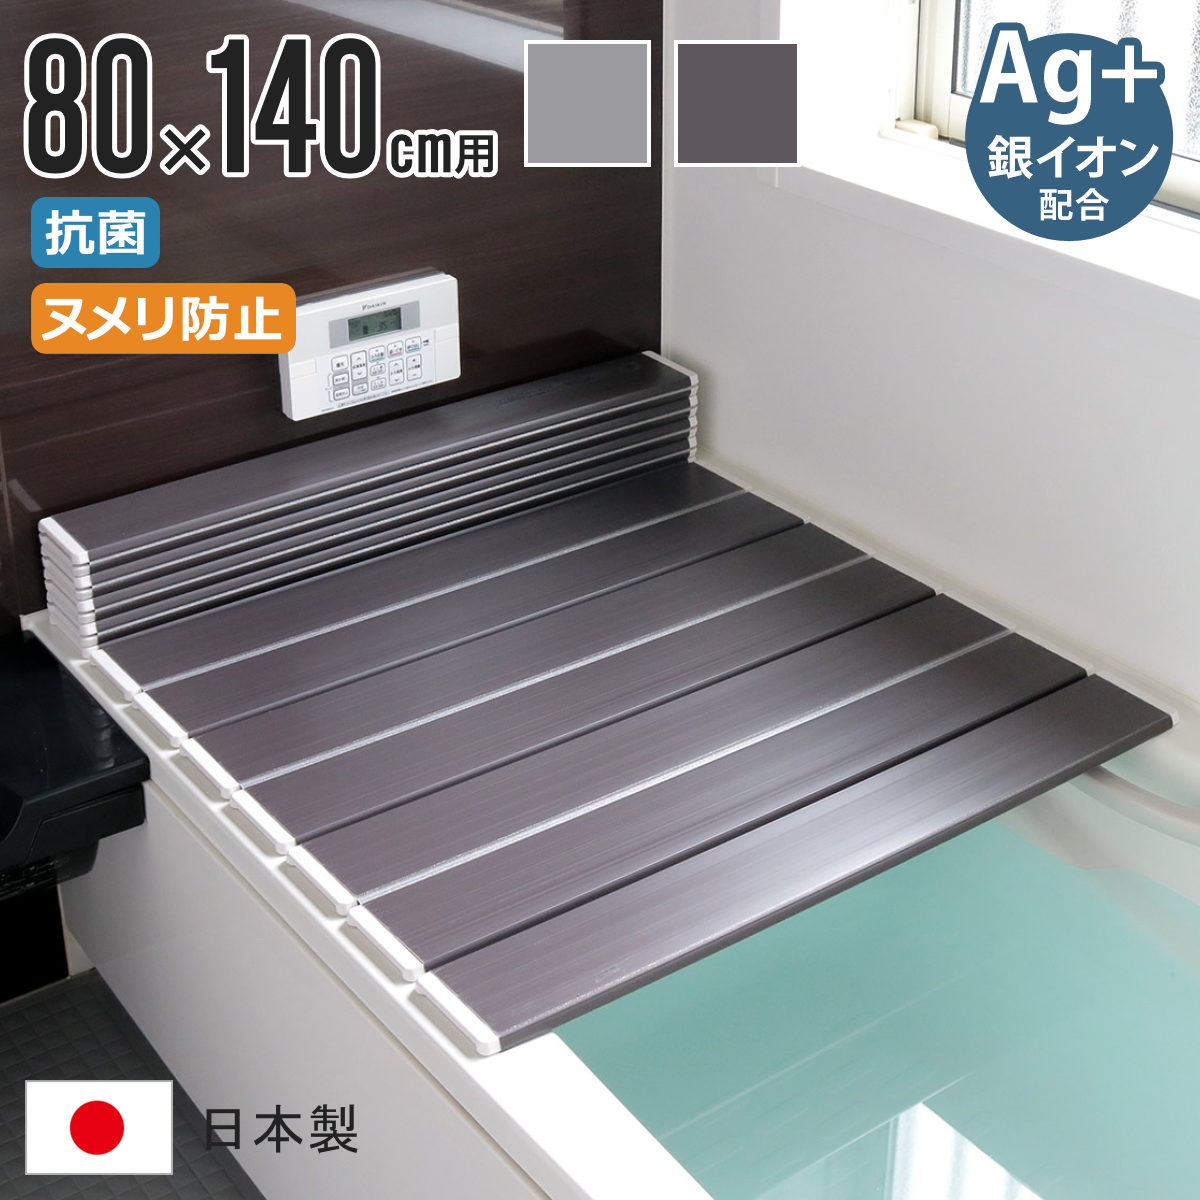 風呂ふた 折りたたみ式 W-14 80×140cm Ag銀イオン 防カビ 日本製